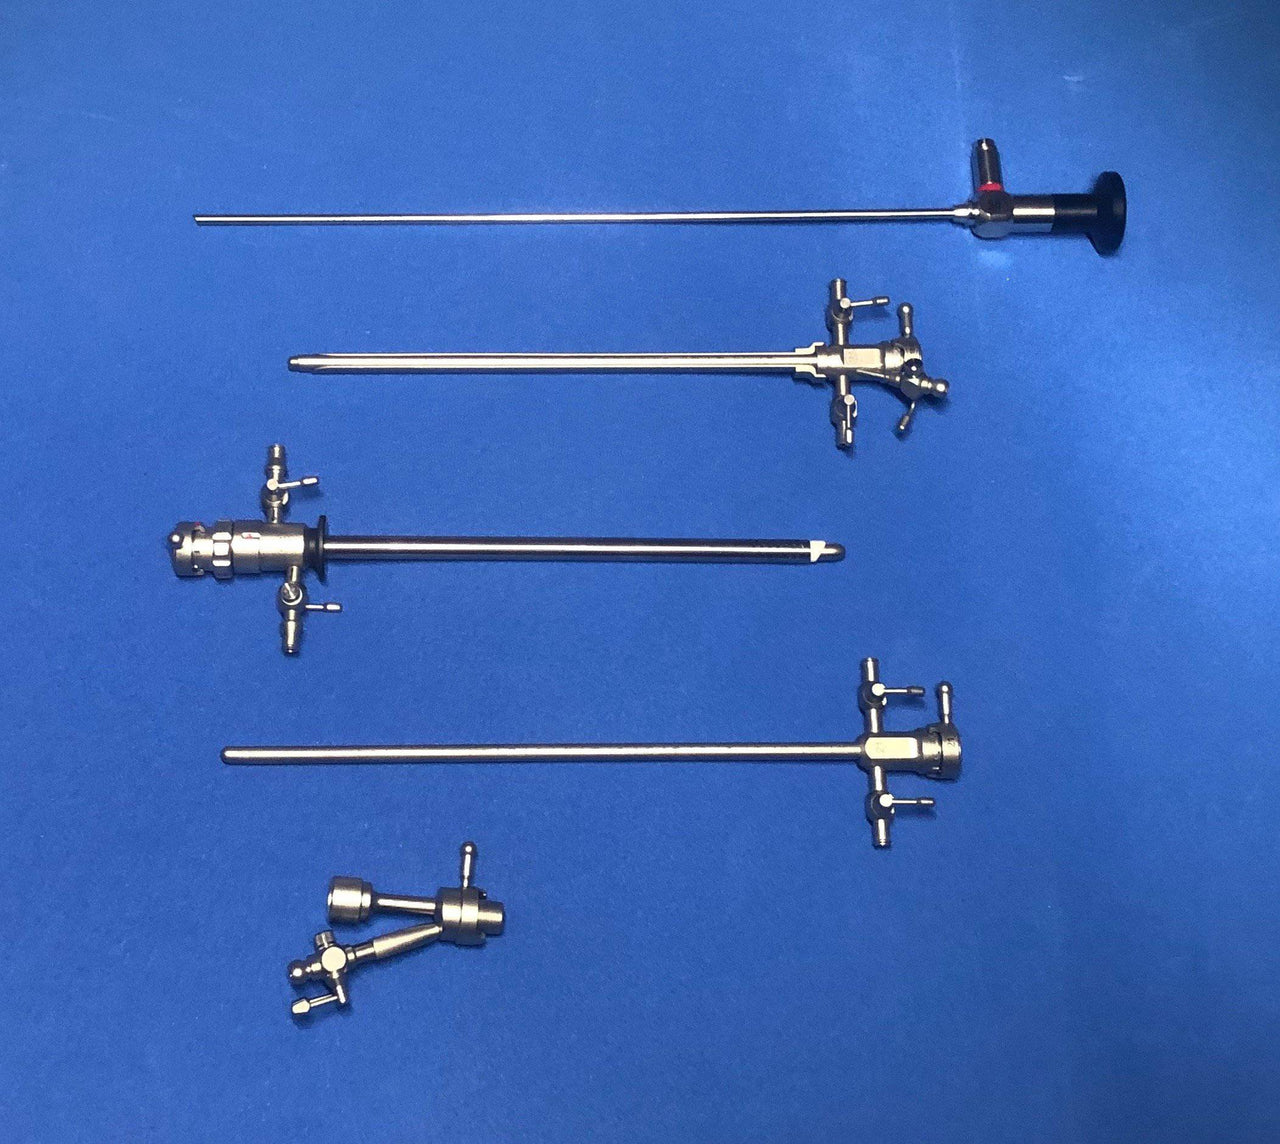 Set Endoscopico Urologico Resector, cistoscopio y uretrotomo.